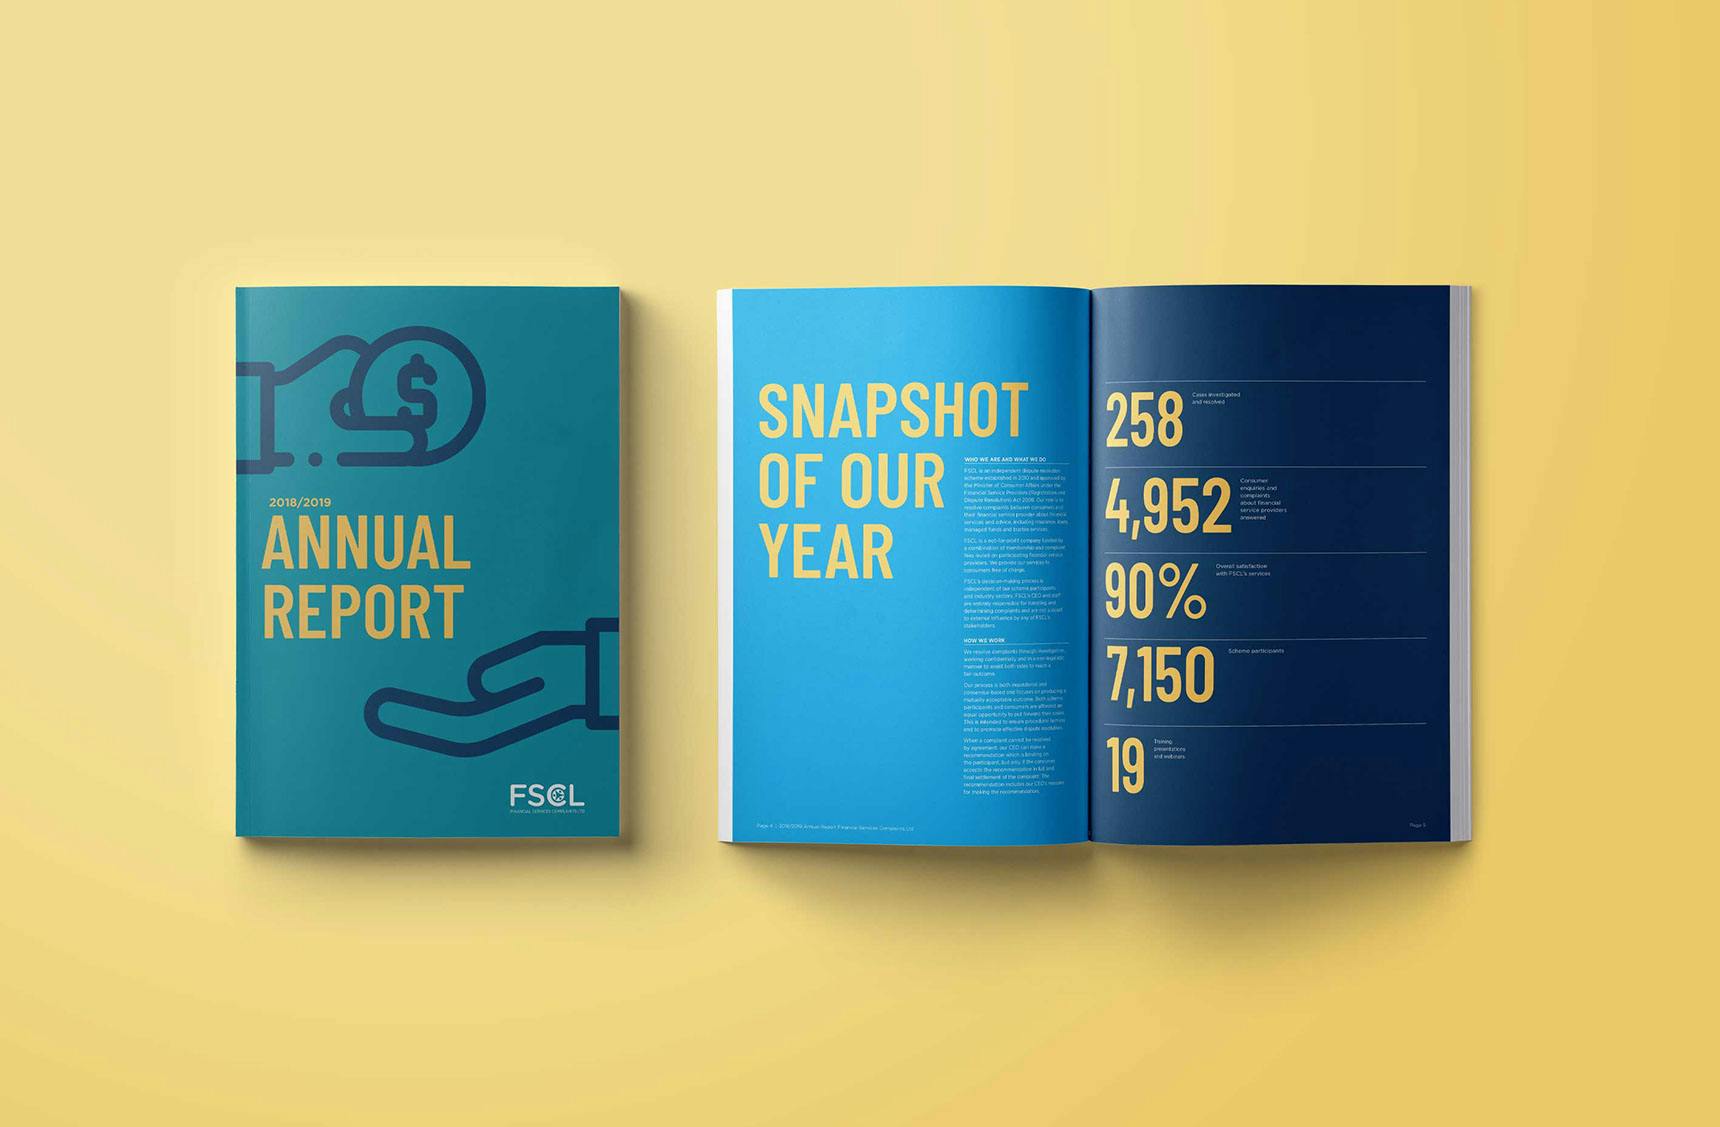 FSCL 2018/19 Annual Report Design